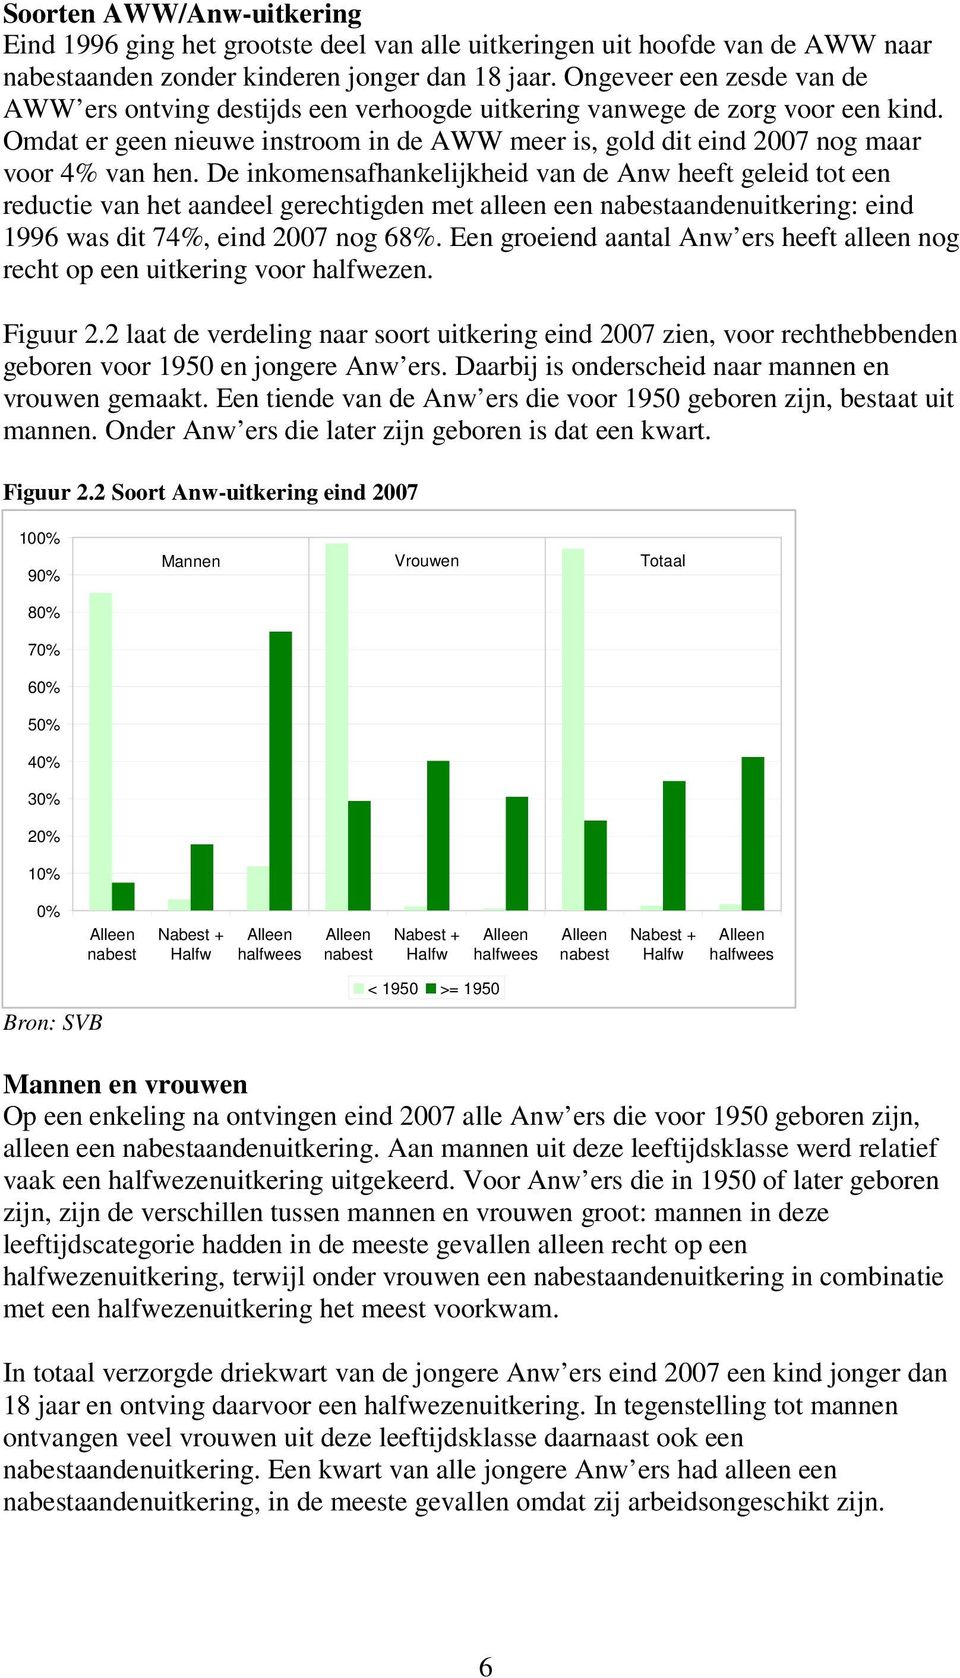 De inkomensafhankelijkheid van de Anw heeft geleid tot een reductie van het aandeel gerechtigden met alleen een nabestaandenuitkering: eind 1996 was dit 74%, eind 2007 nog 68%.